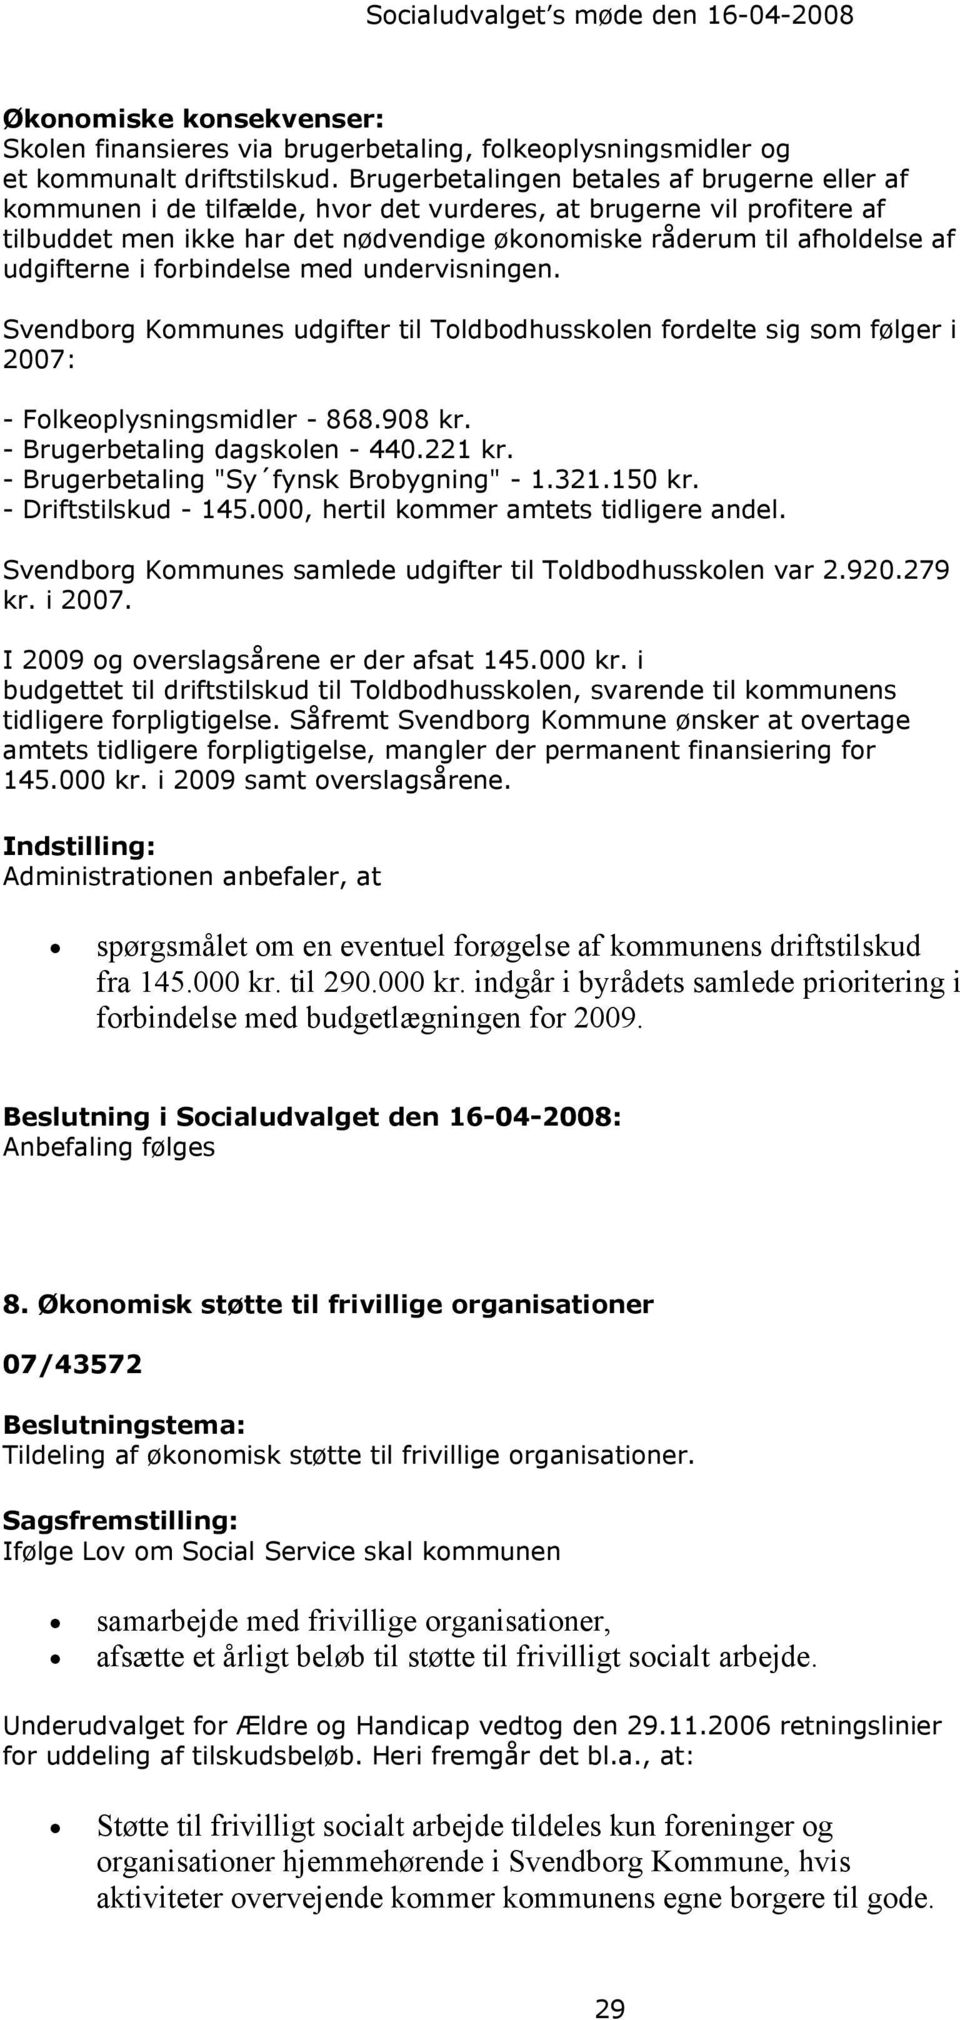 udgifterne i forbindelse med undervisningen. Svendborg Kommunes udgifter til Toldbodhusskolen fordelte sig som følger i 2007: - Folkeoplysningsmidler - 868.908 kr. - Brugerbetaling dagskolen - 440.